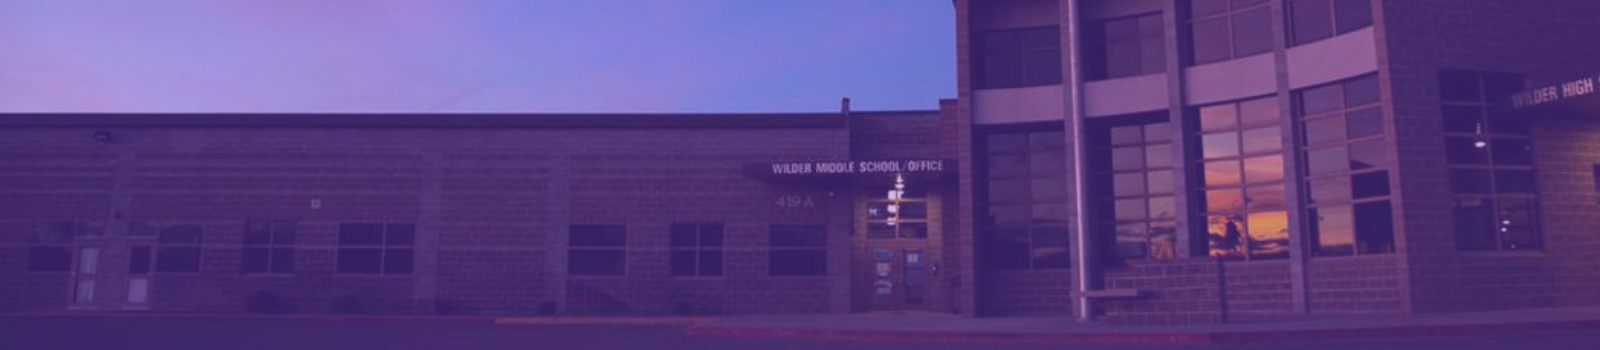 Wilder high school